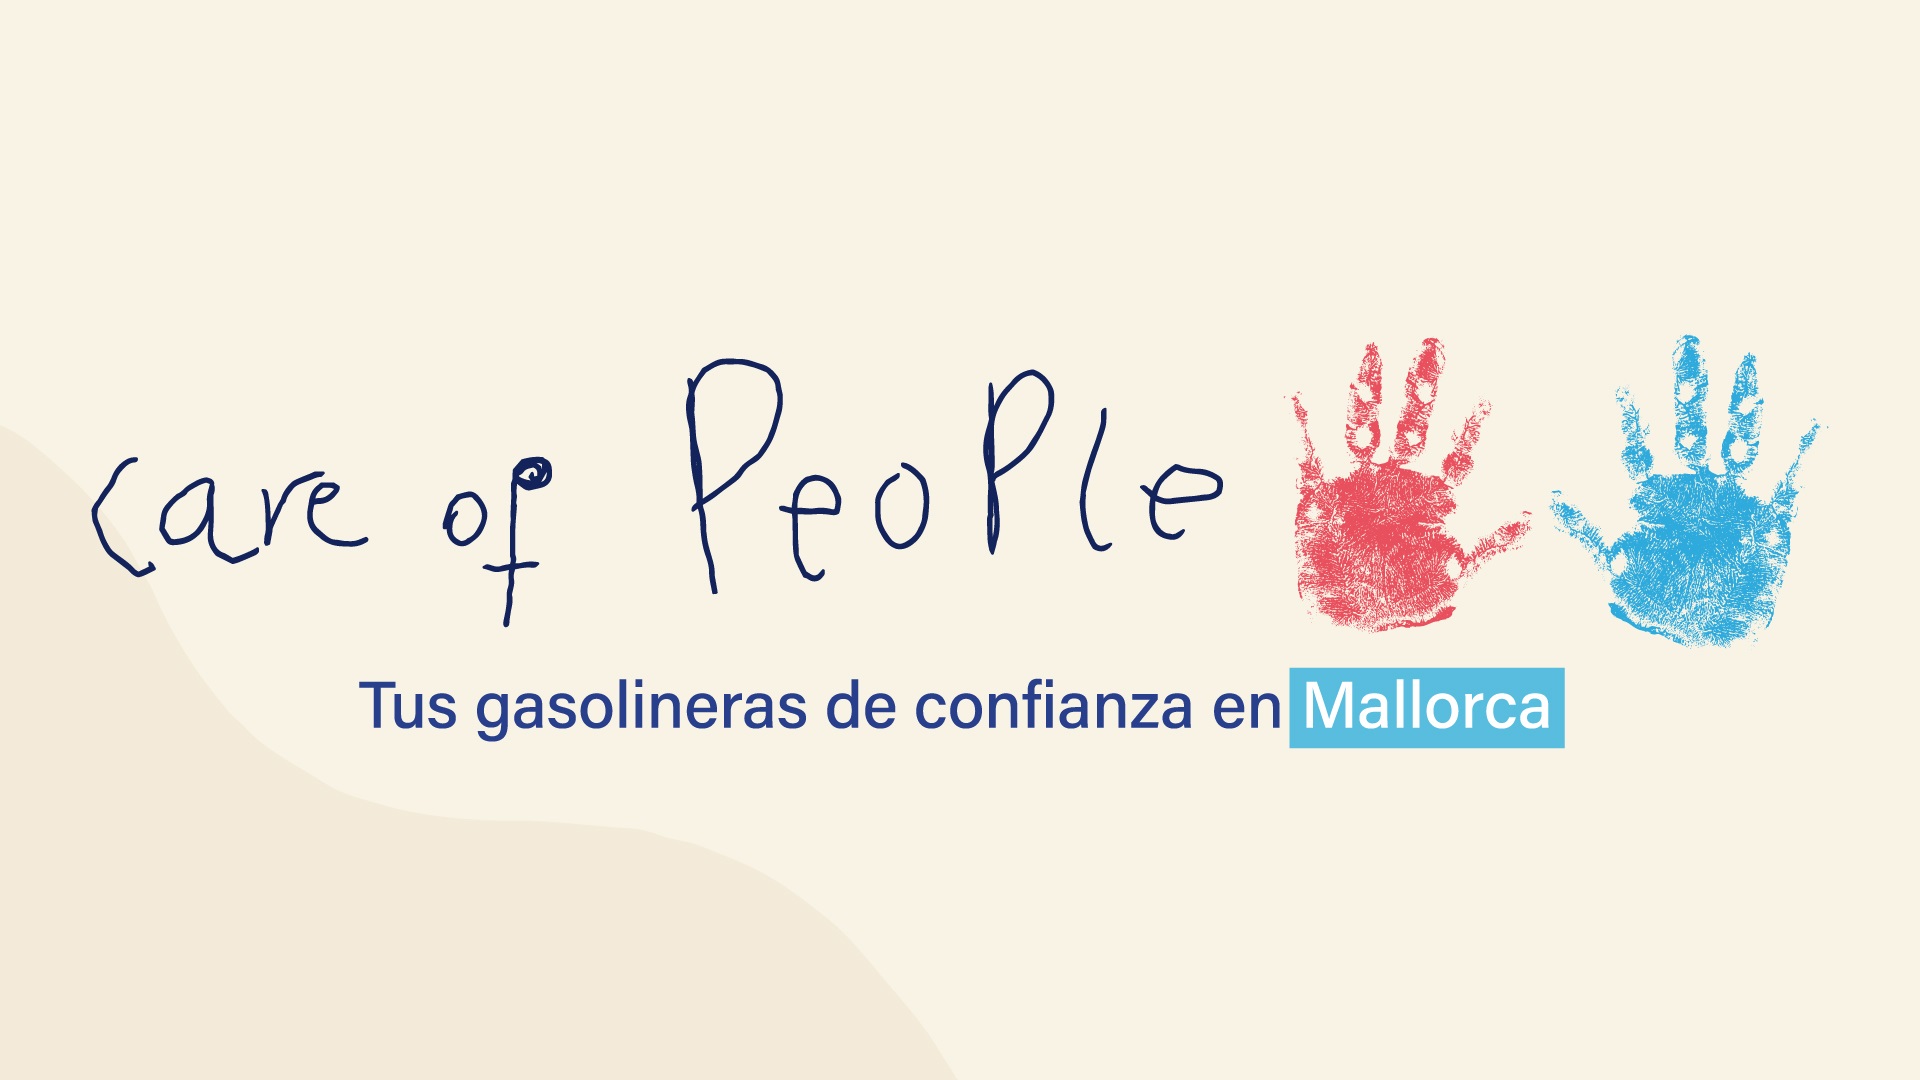 Care of People - Tus gasolineras de confianza en Mallorca